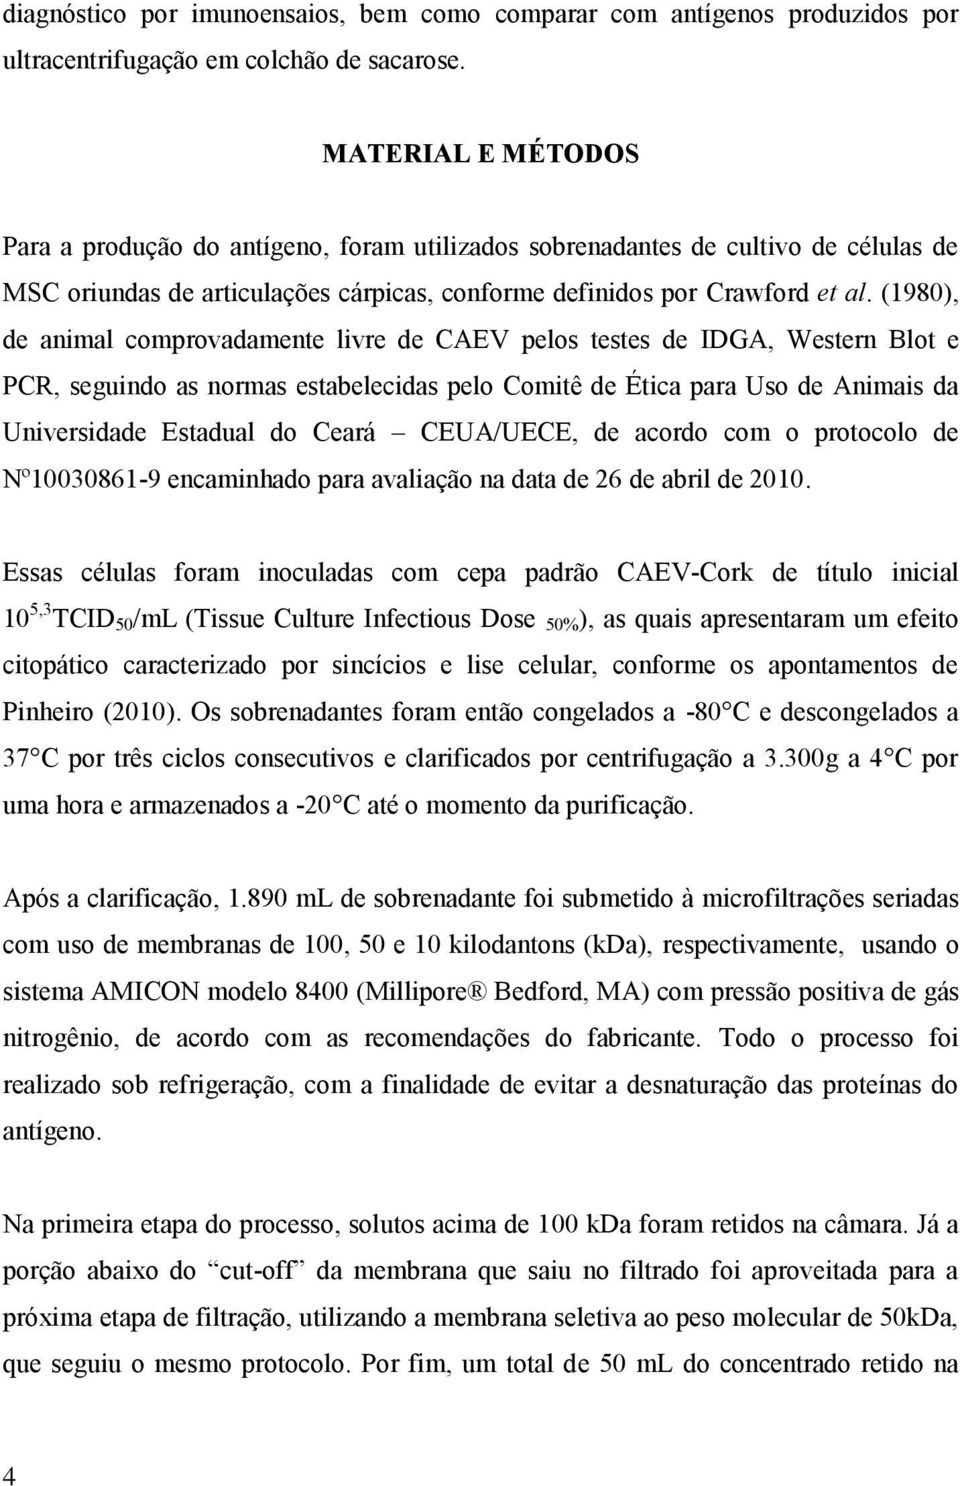 (1980), de animal comprovadamente livre de CAEV pelos testes de IDGA, Western Blot e PCR, seguindo as normas estabelecidas pelo Comitê de Ética para Uso de Animais da Universidade Estadual do Ceará